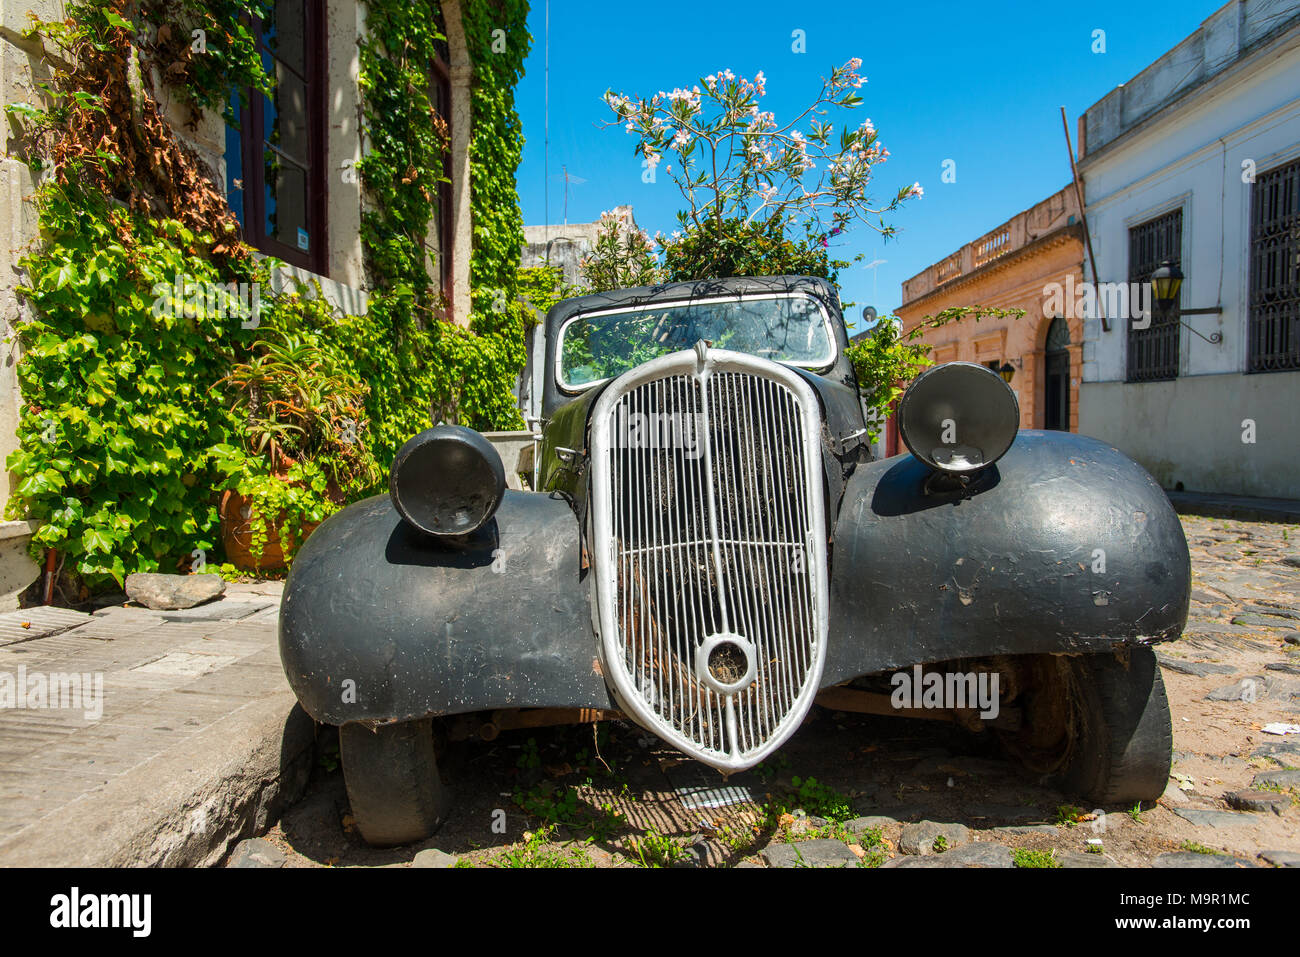 Automóvil de un oldtimer cubierto con plantas con flores, Colonia del Sacramento, Uruguay Foto de stock